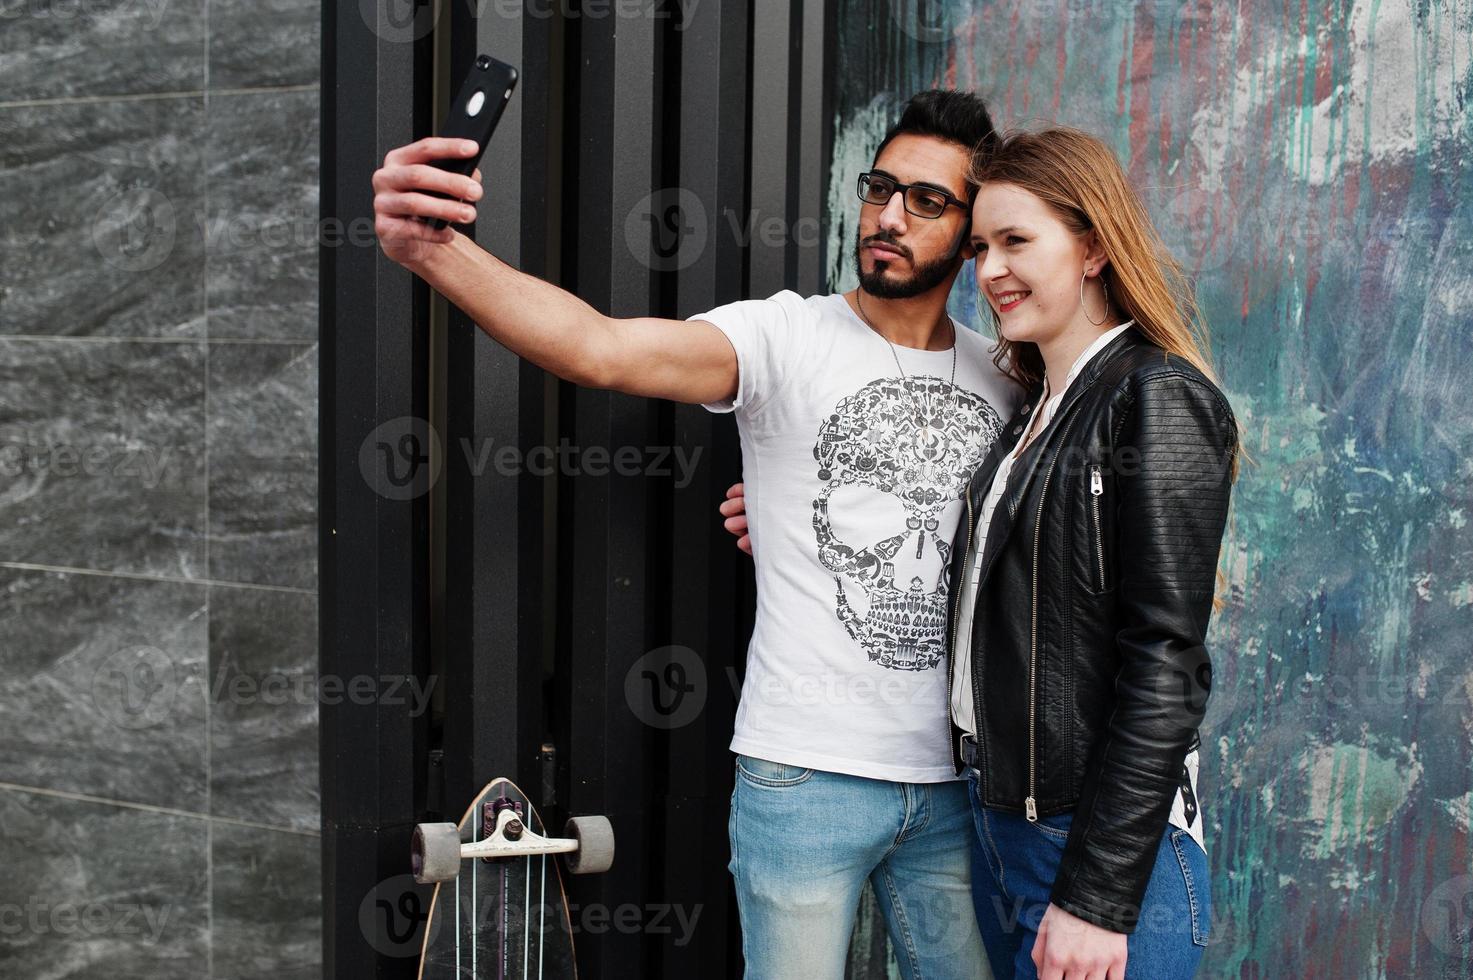 legal casal multirracial posando contra a parede e fazendo selfie juntos. foto